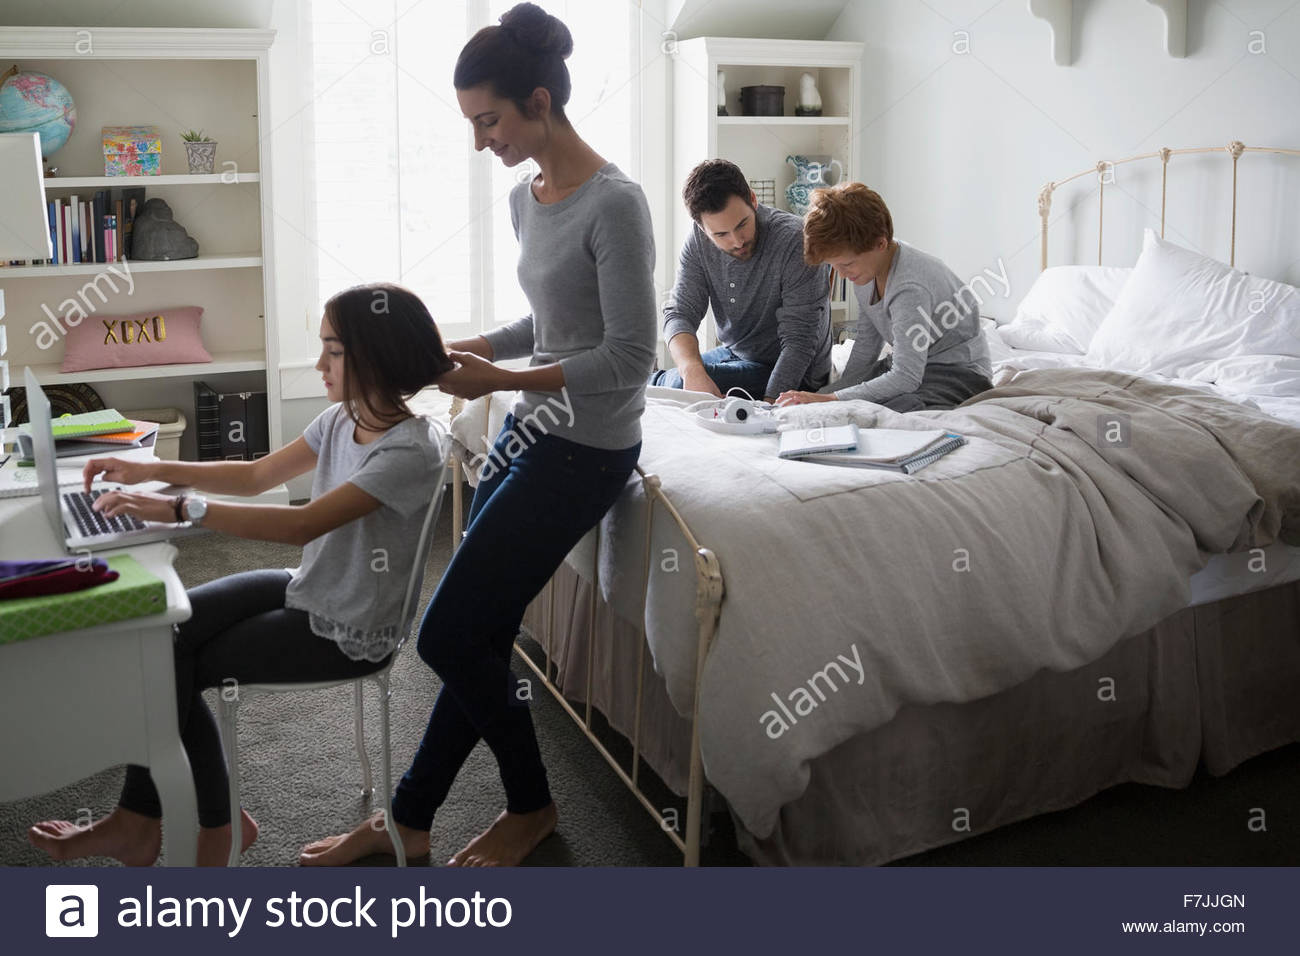 Parents helping children with homework in bedroom Stock Photo